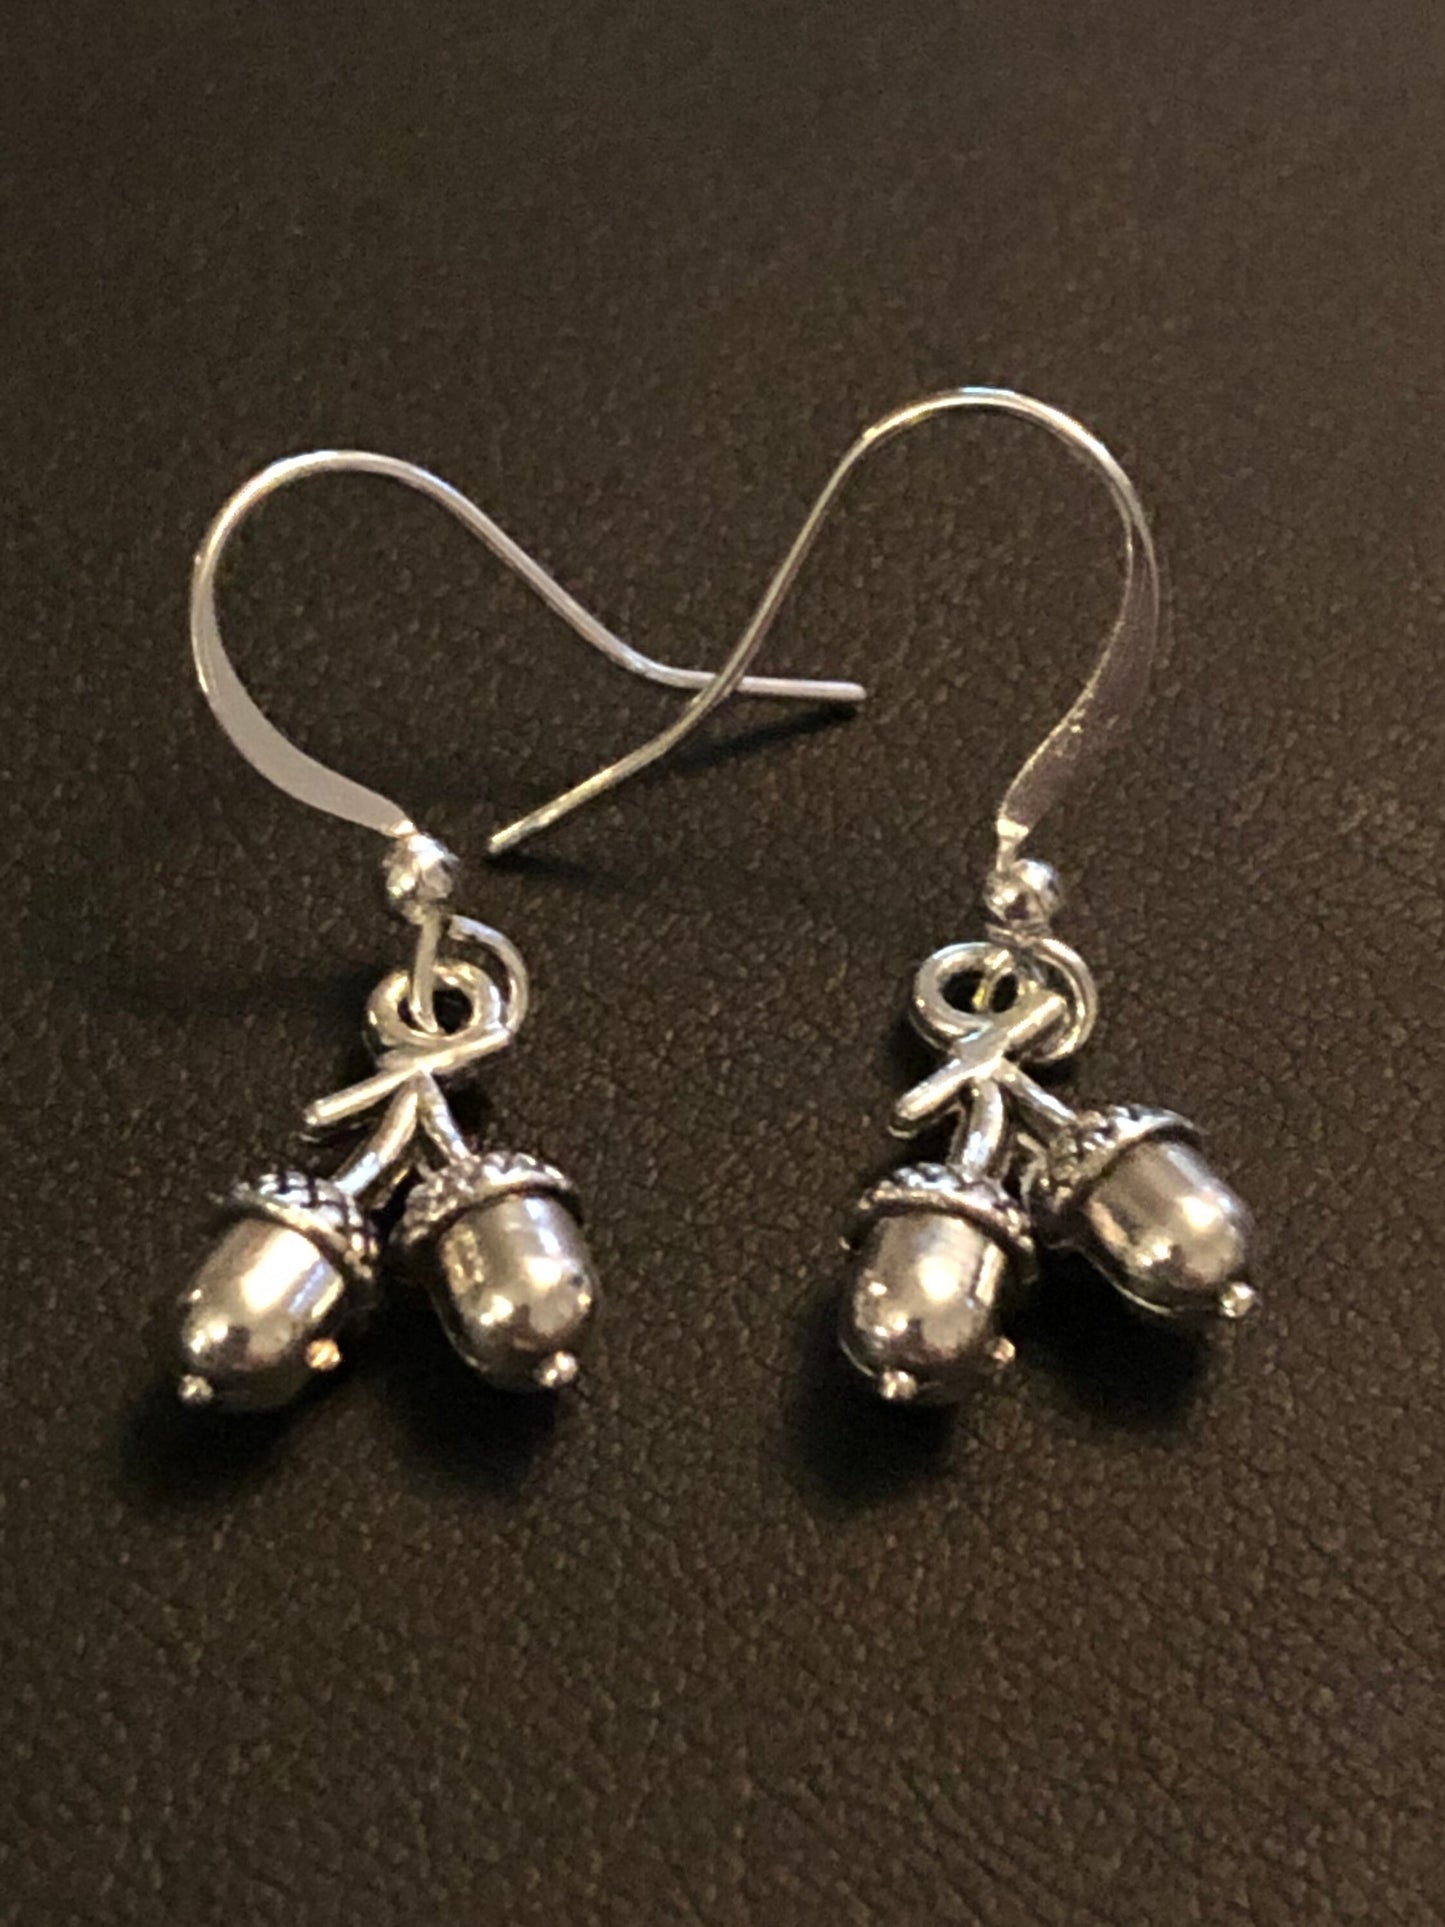 silver tone acorn drop earrings pierced ears